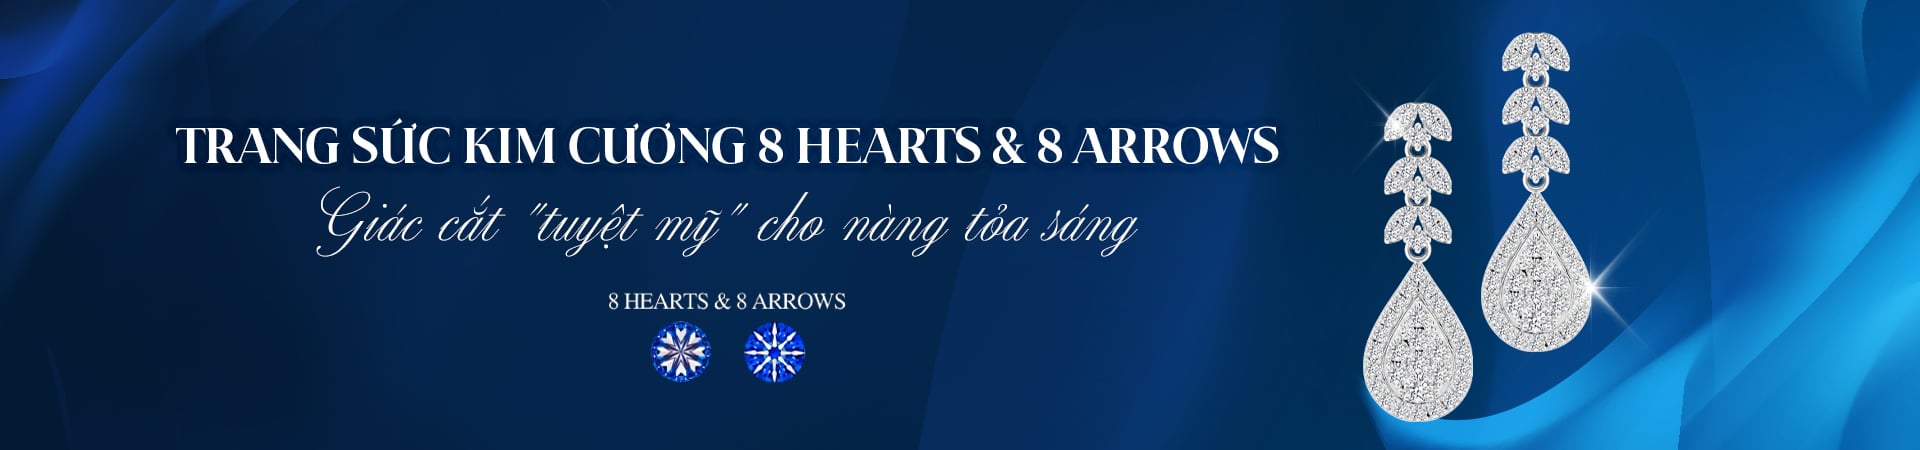 Trang sức kim cương 8 hearts & 8 arrows